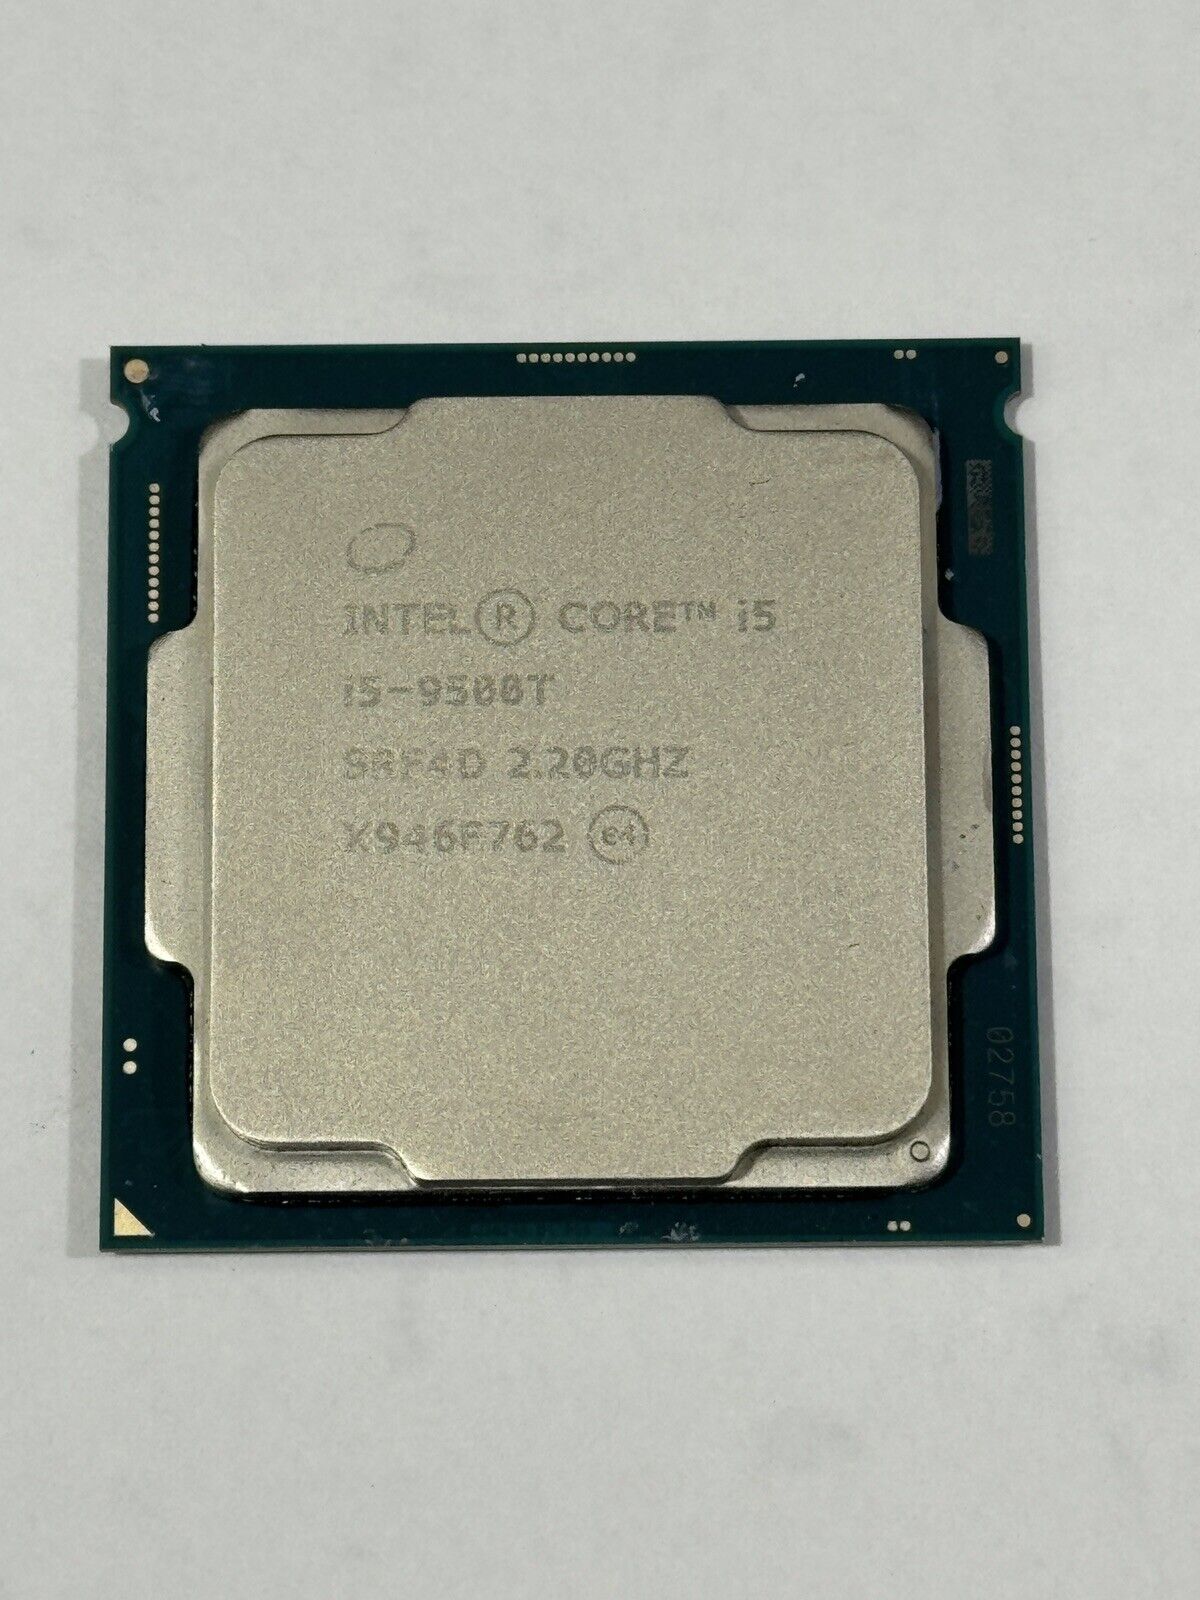 Intel Core i5-9500T 6-Core 2.2GHz FCLGA1151 CPU Processor SRF4D